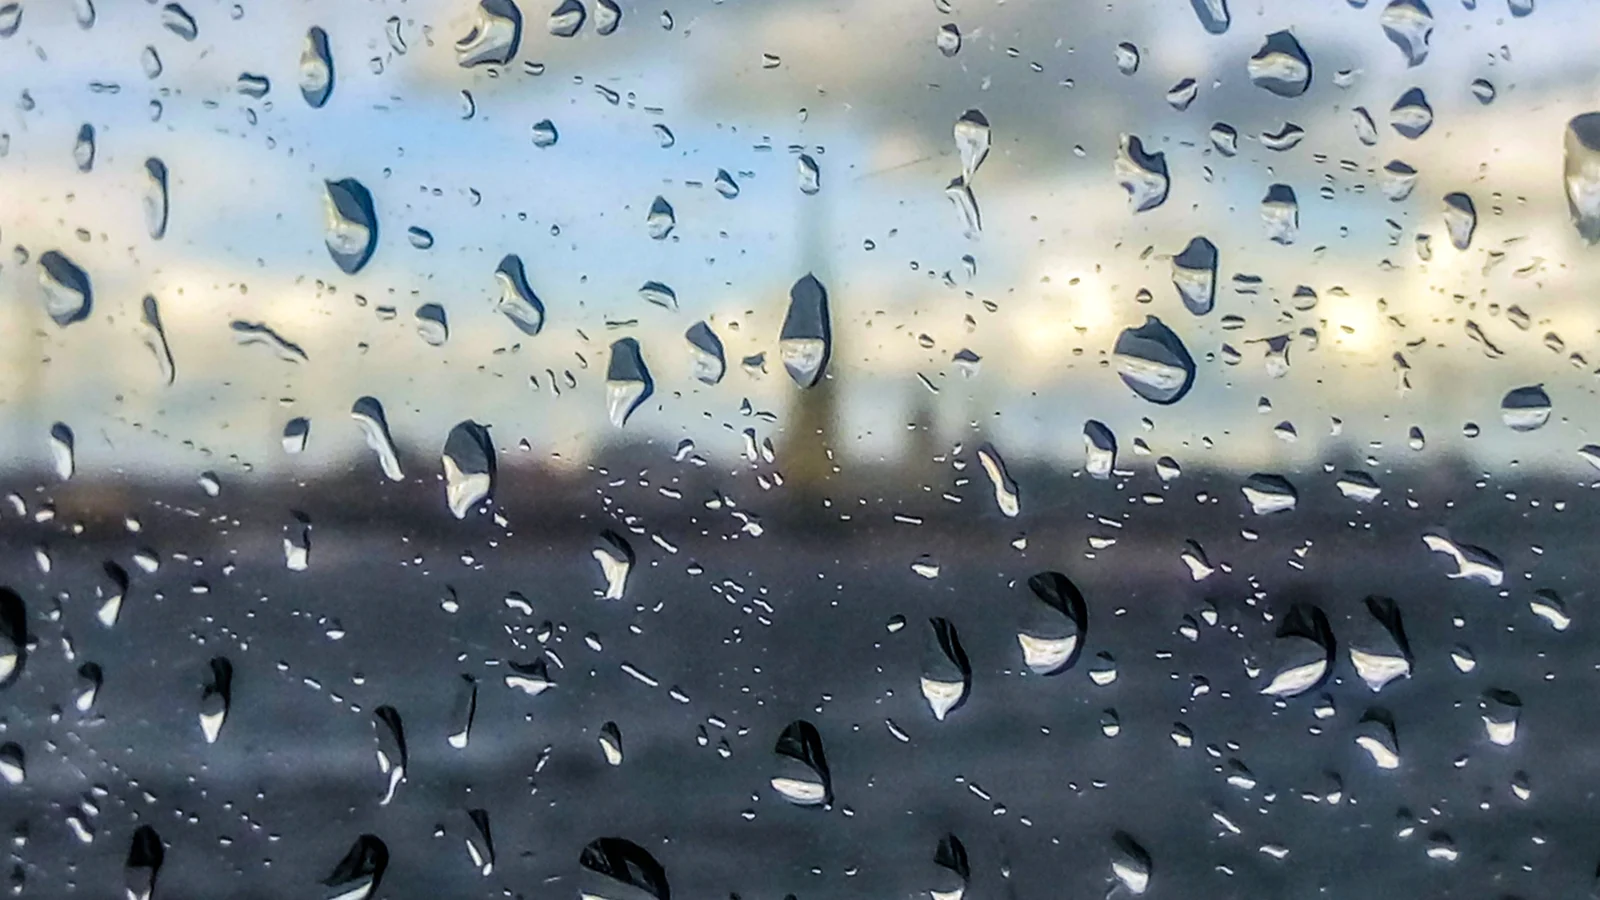 Дождь на стекле для фотошопа на прозрачном фоне